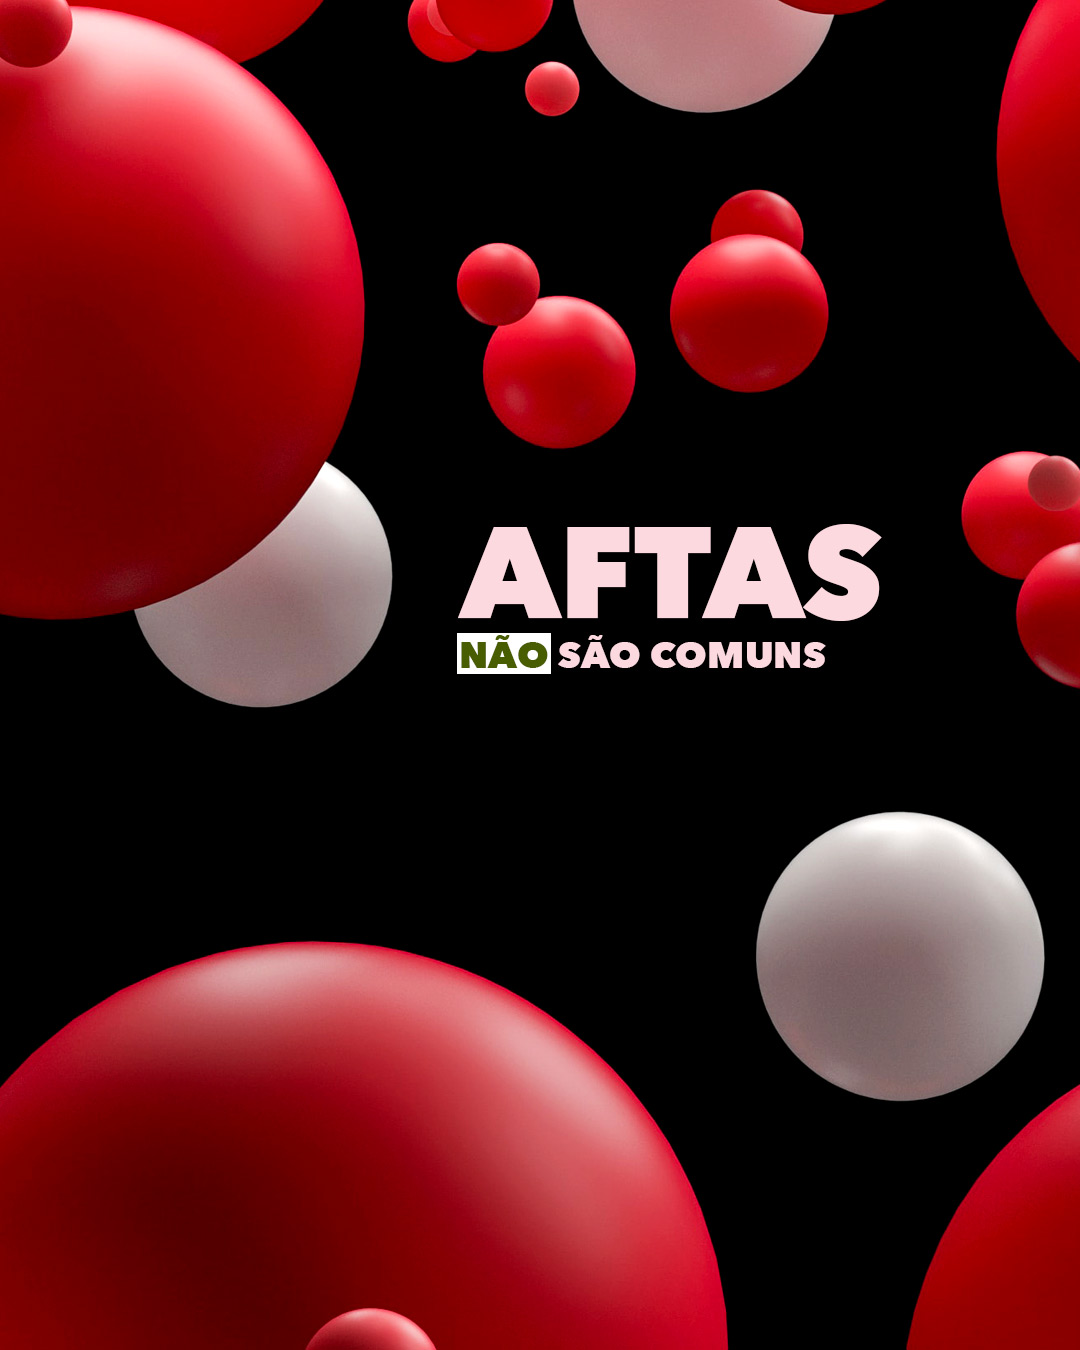 Read more about the article Aftas não são comuns.